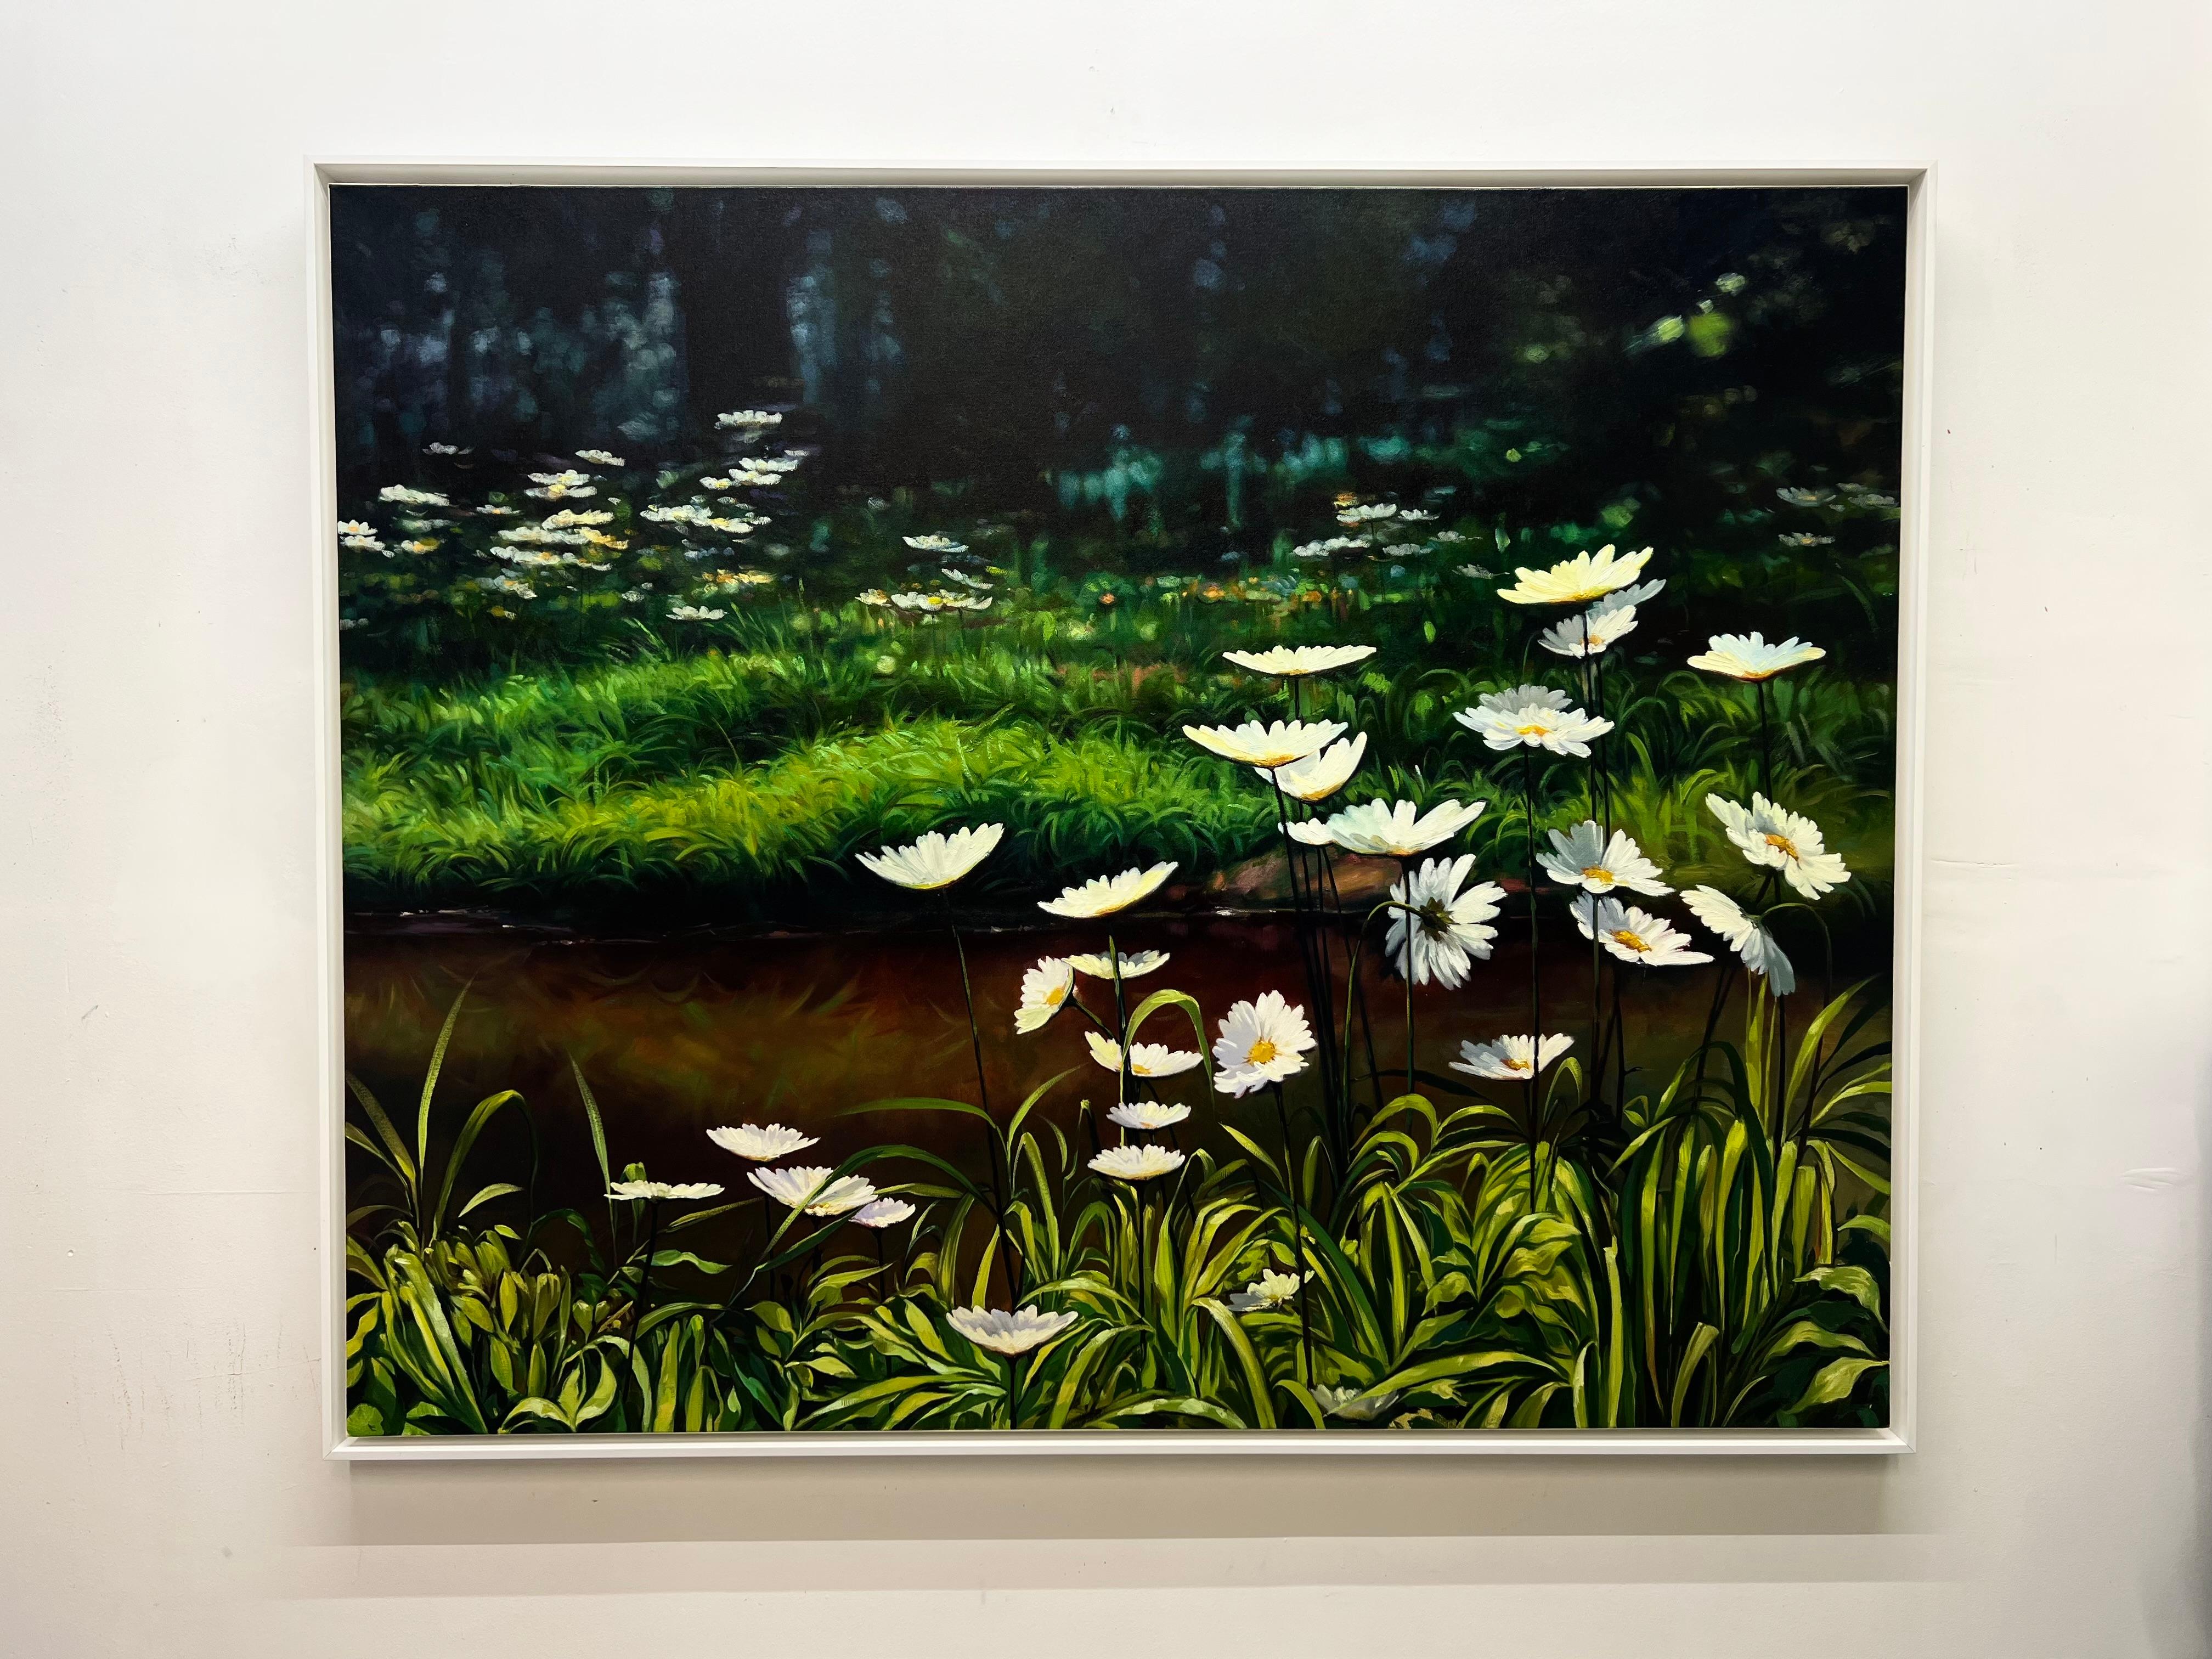 <p>Commentaires de l'artiste<br>L'artiste Jose Luis Bermudez capture une tapisserie verdoyante de la nature où de délicates marguerites dominent la scène. 